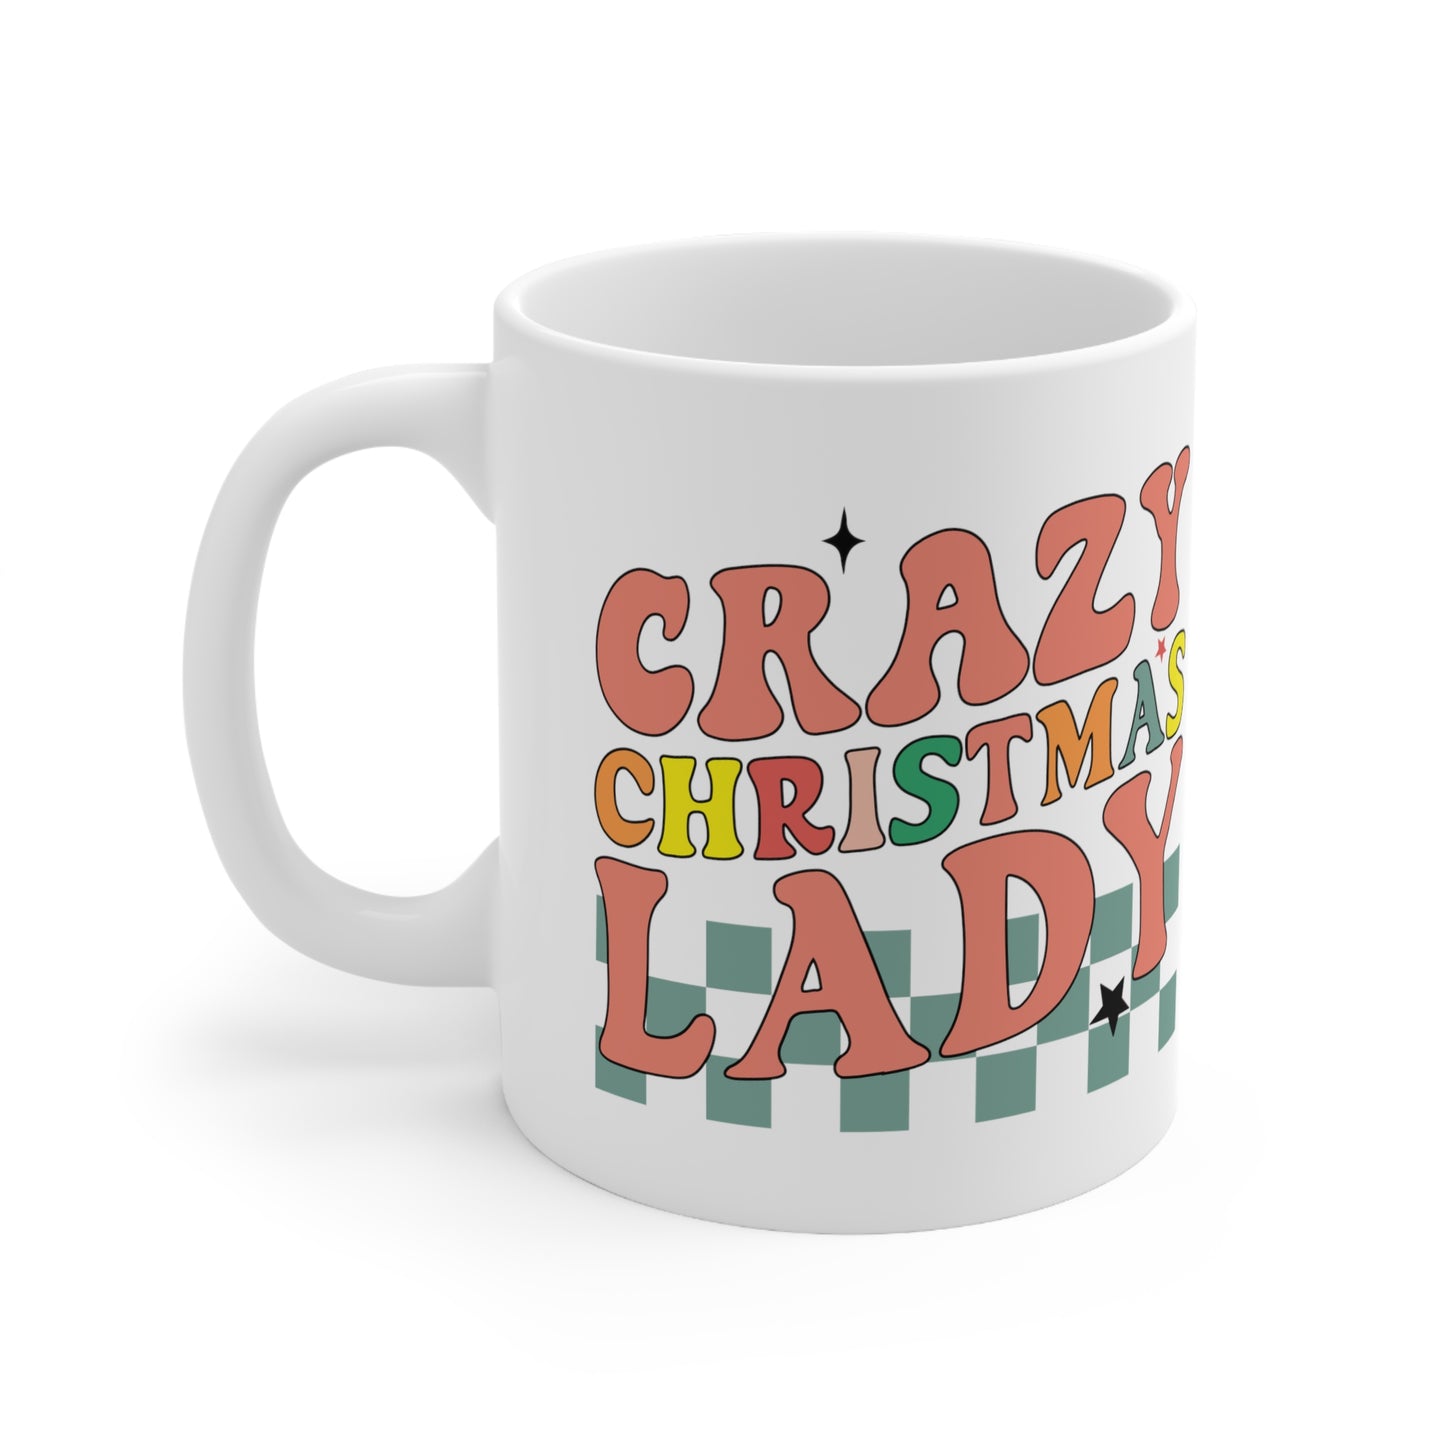 Crazy Christmas Lady - Christmas Mug